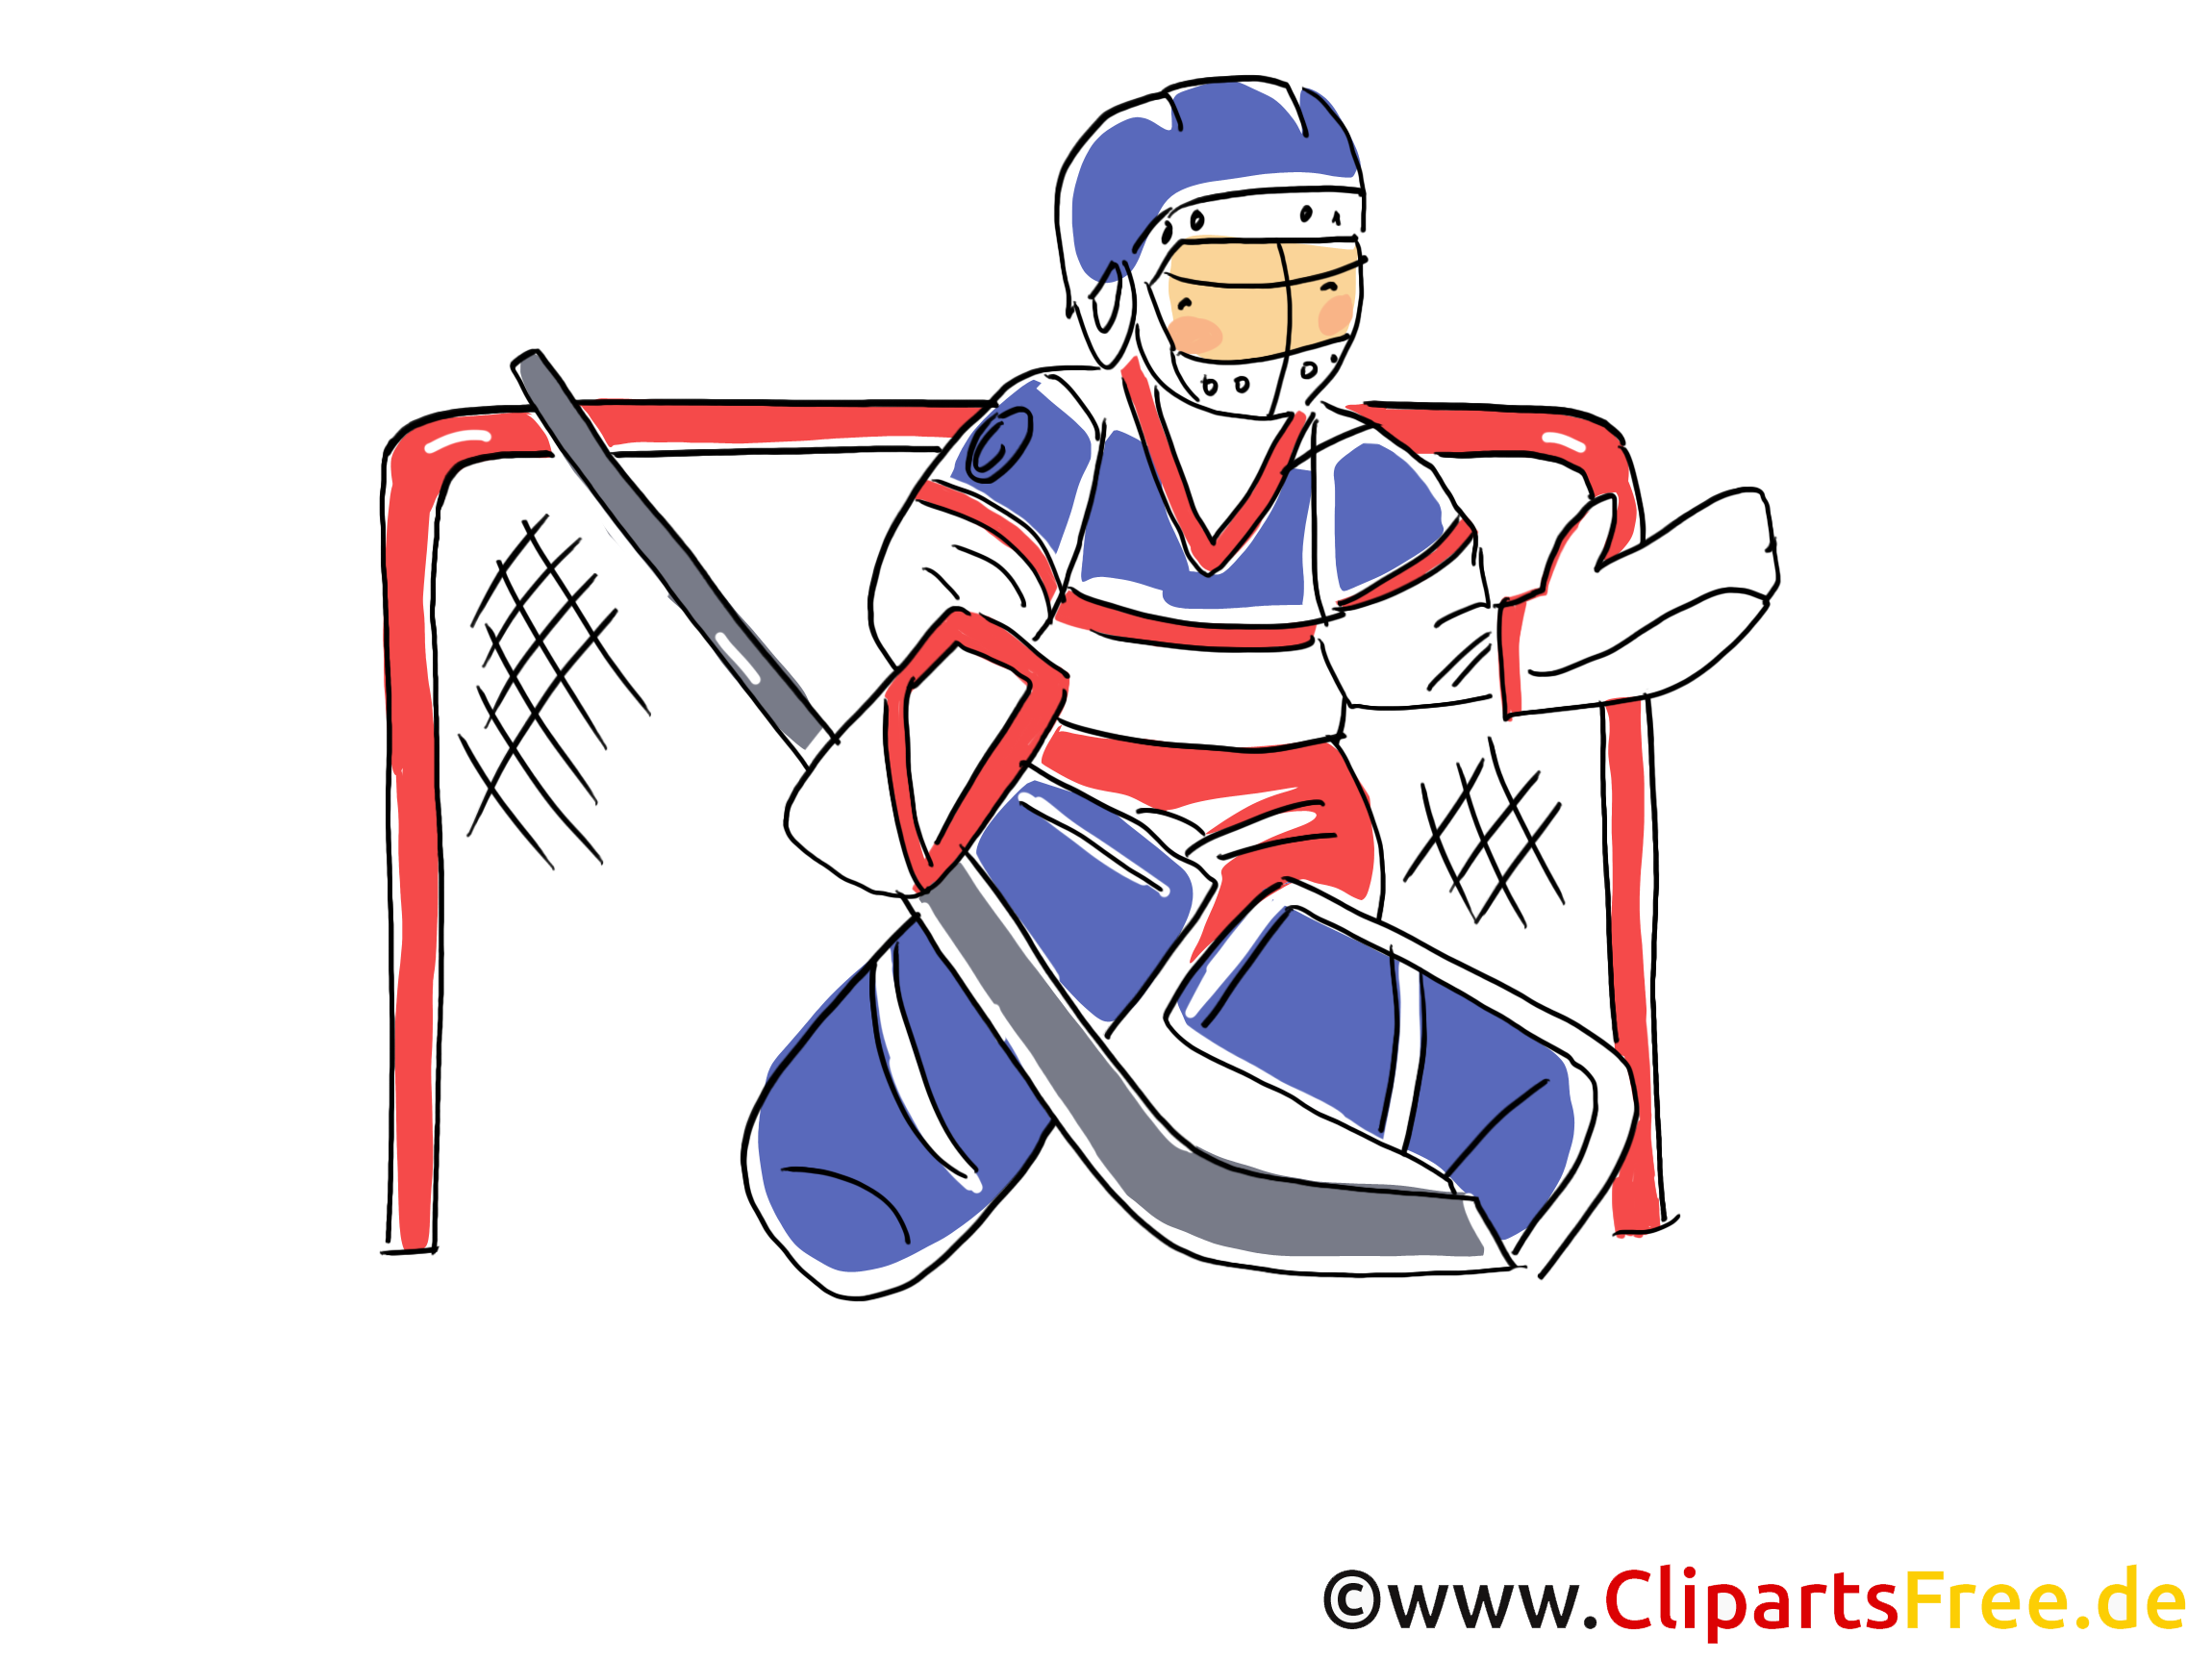 Gardien de but images - Hockey dessins gratuits